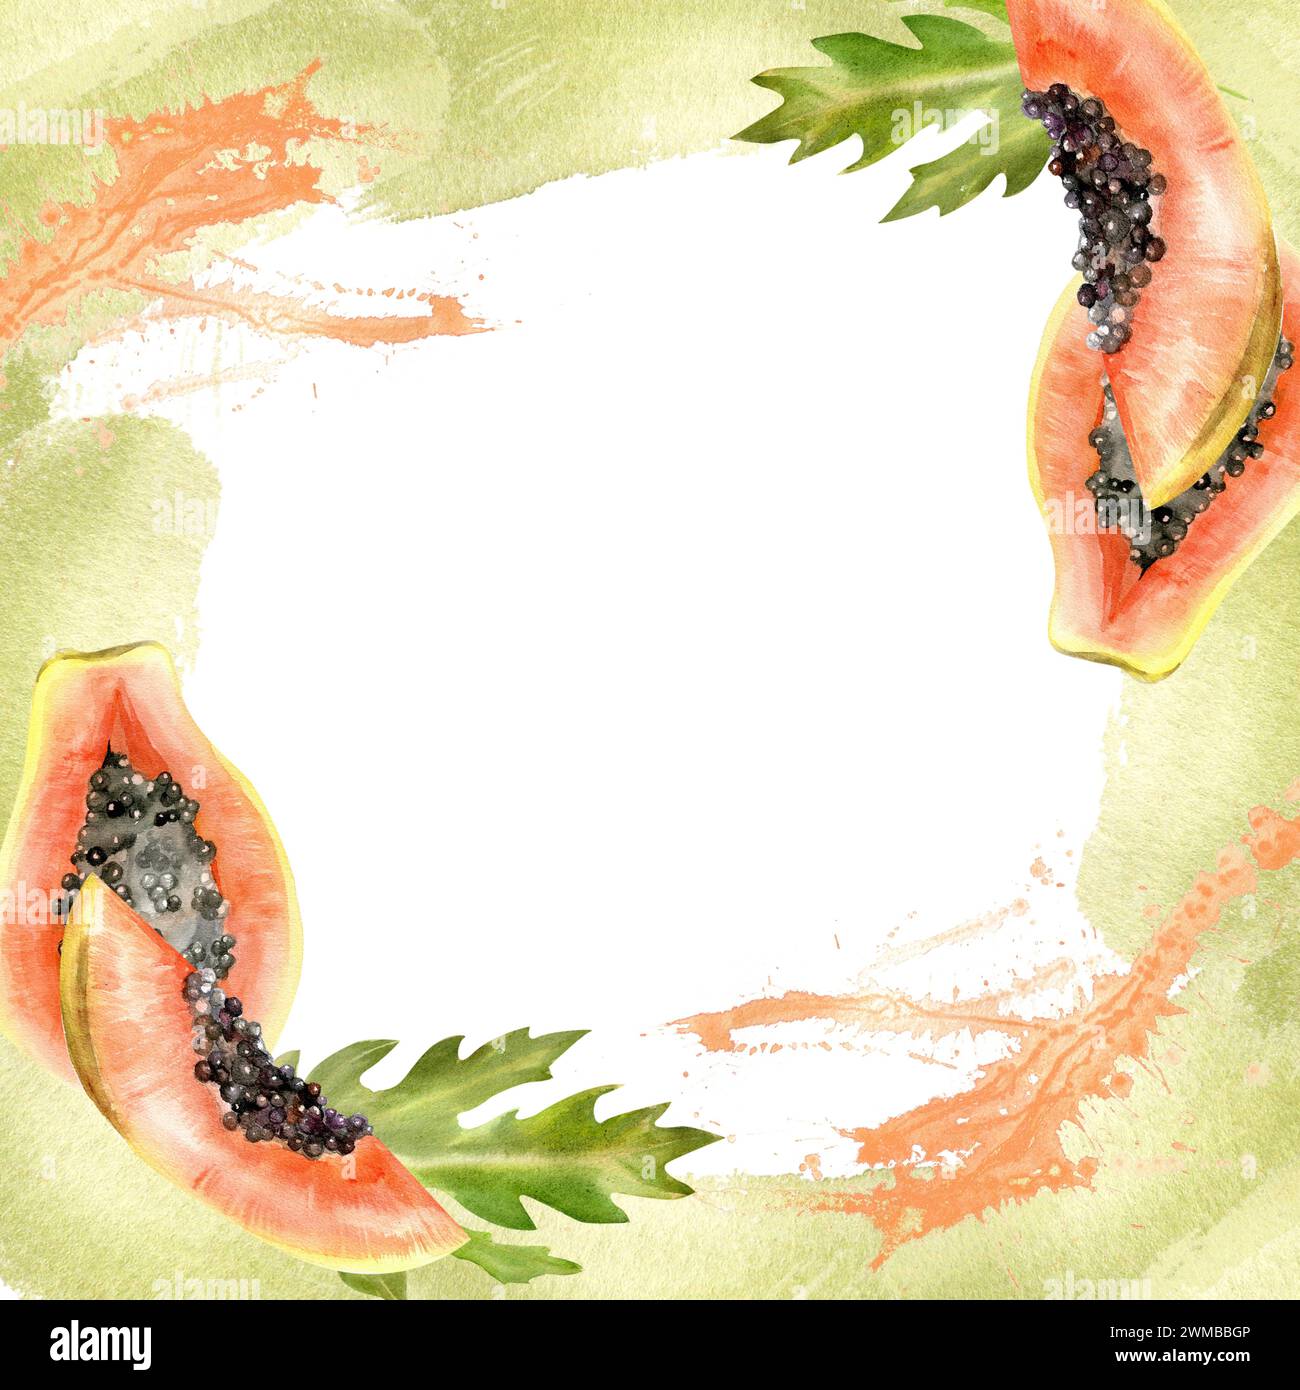 Illustrazione della cornice in papaya tropicale ad acquerello. Bordi di frutta esotica disegnati a mano con schizzi verdi, fette di papaya e pezzi da confezionare, etichetta, logo Foto Stock